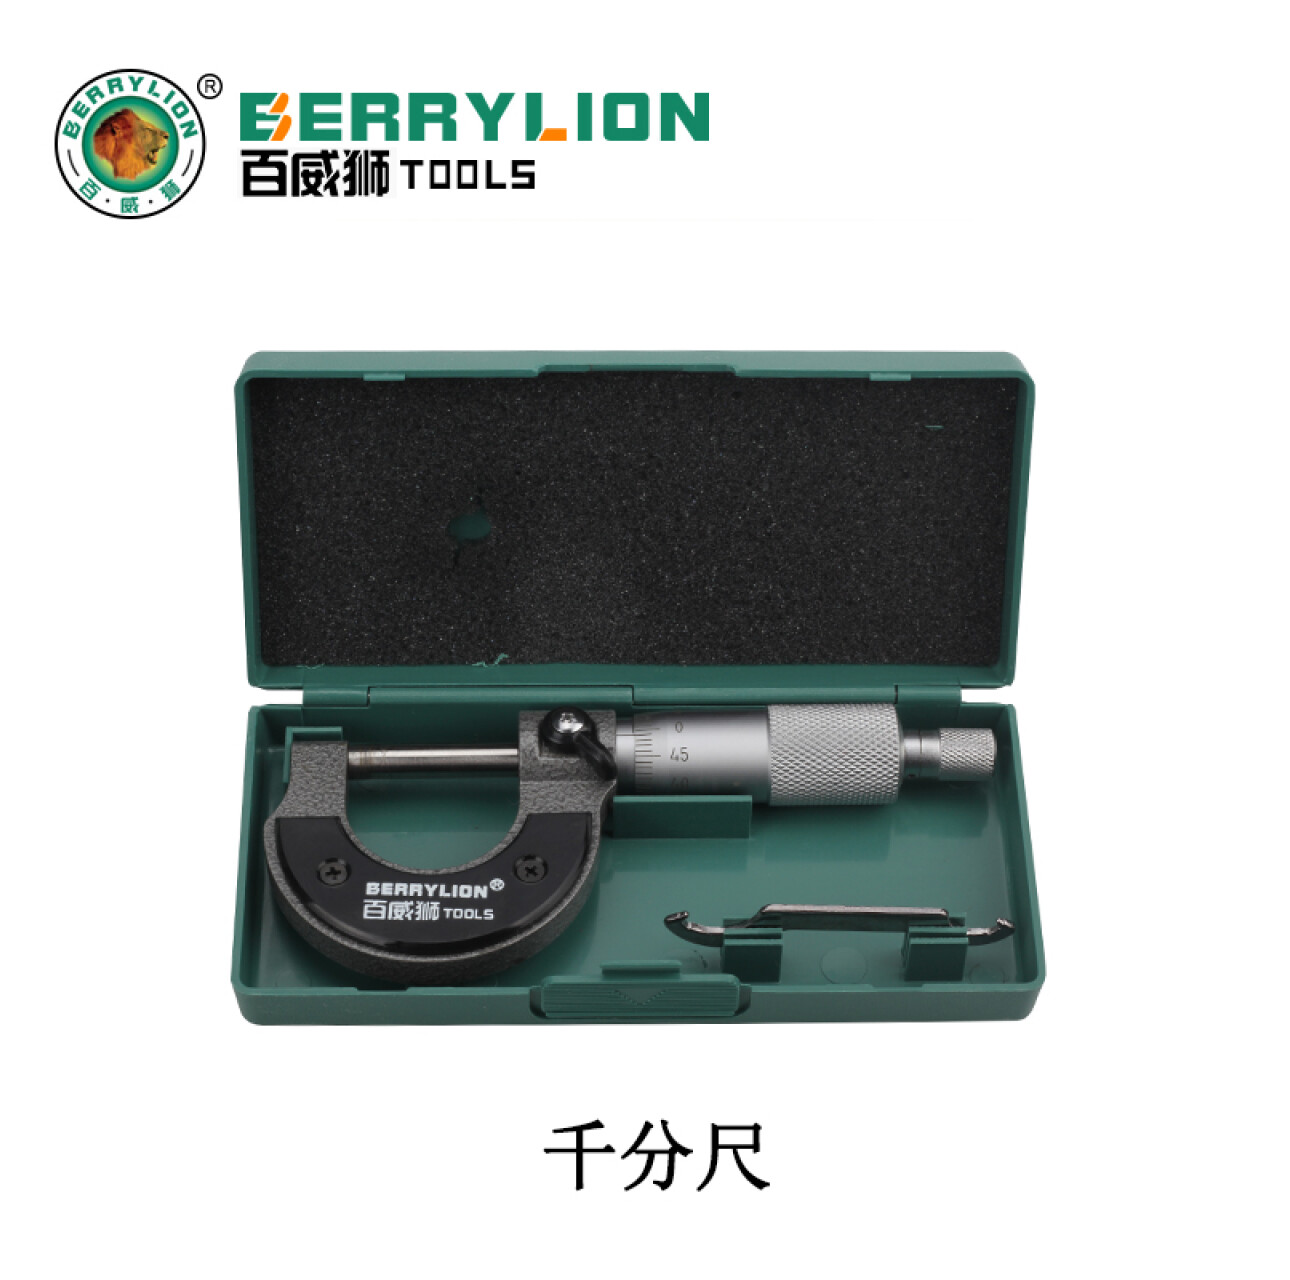 Hình ảnh 9 của mặt hàng Thước Panme (Micrometer) 0-25mm Berrylion 070505025